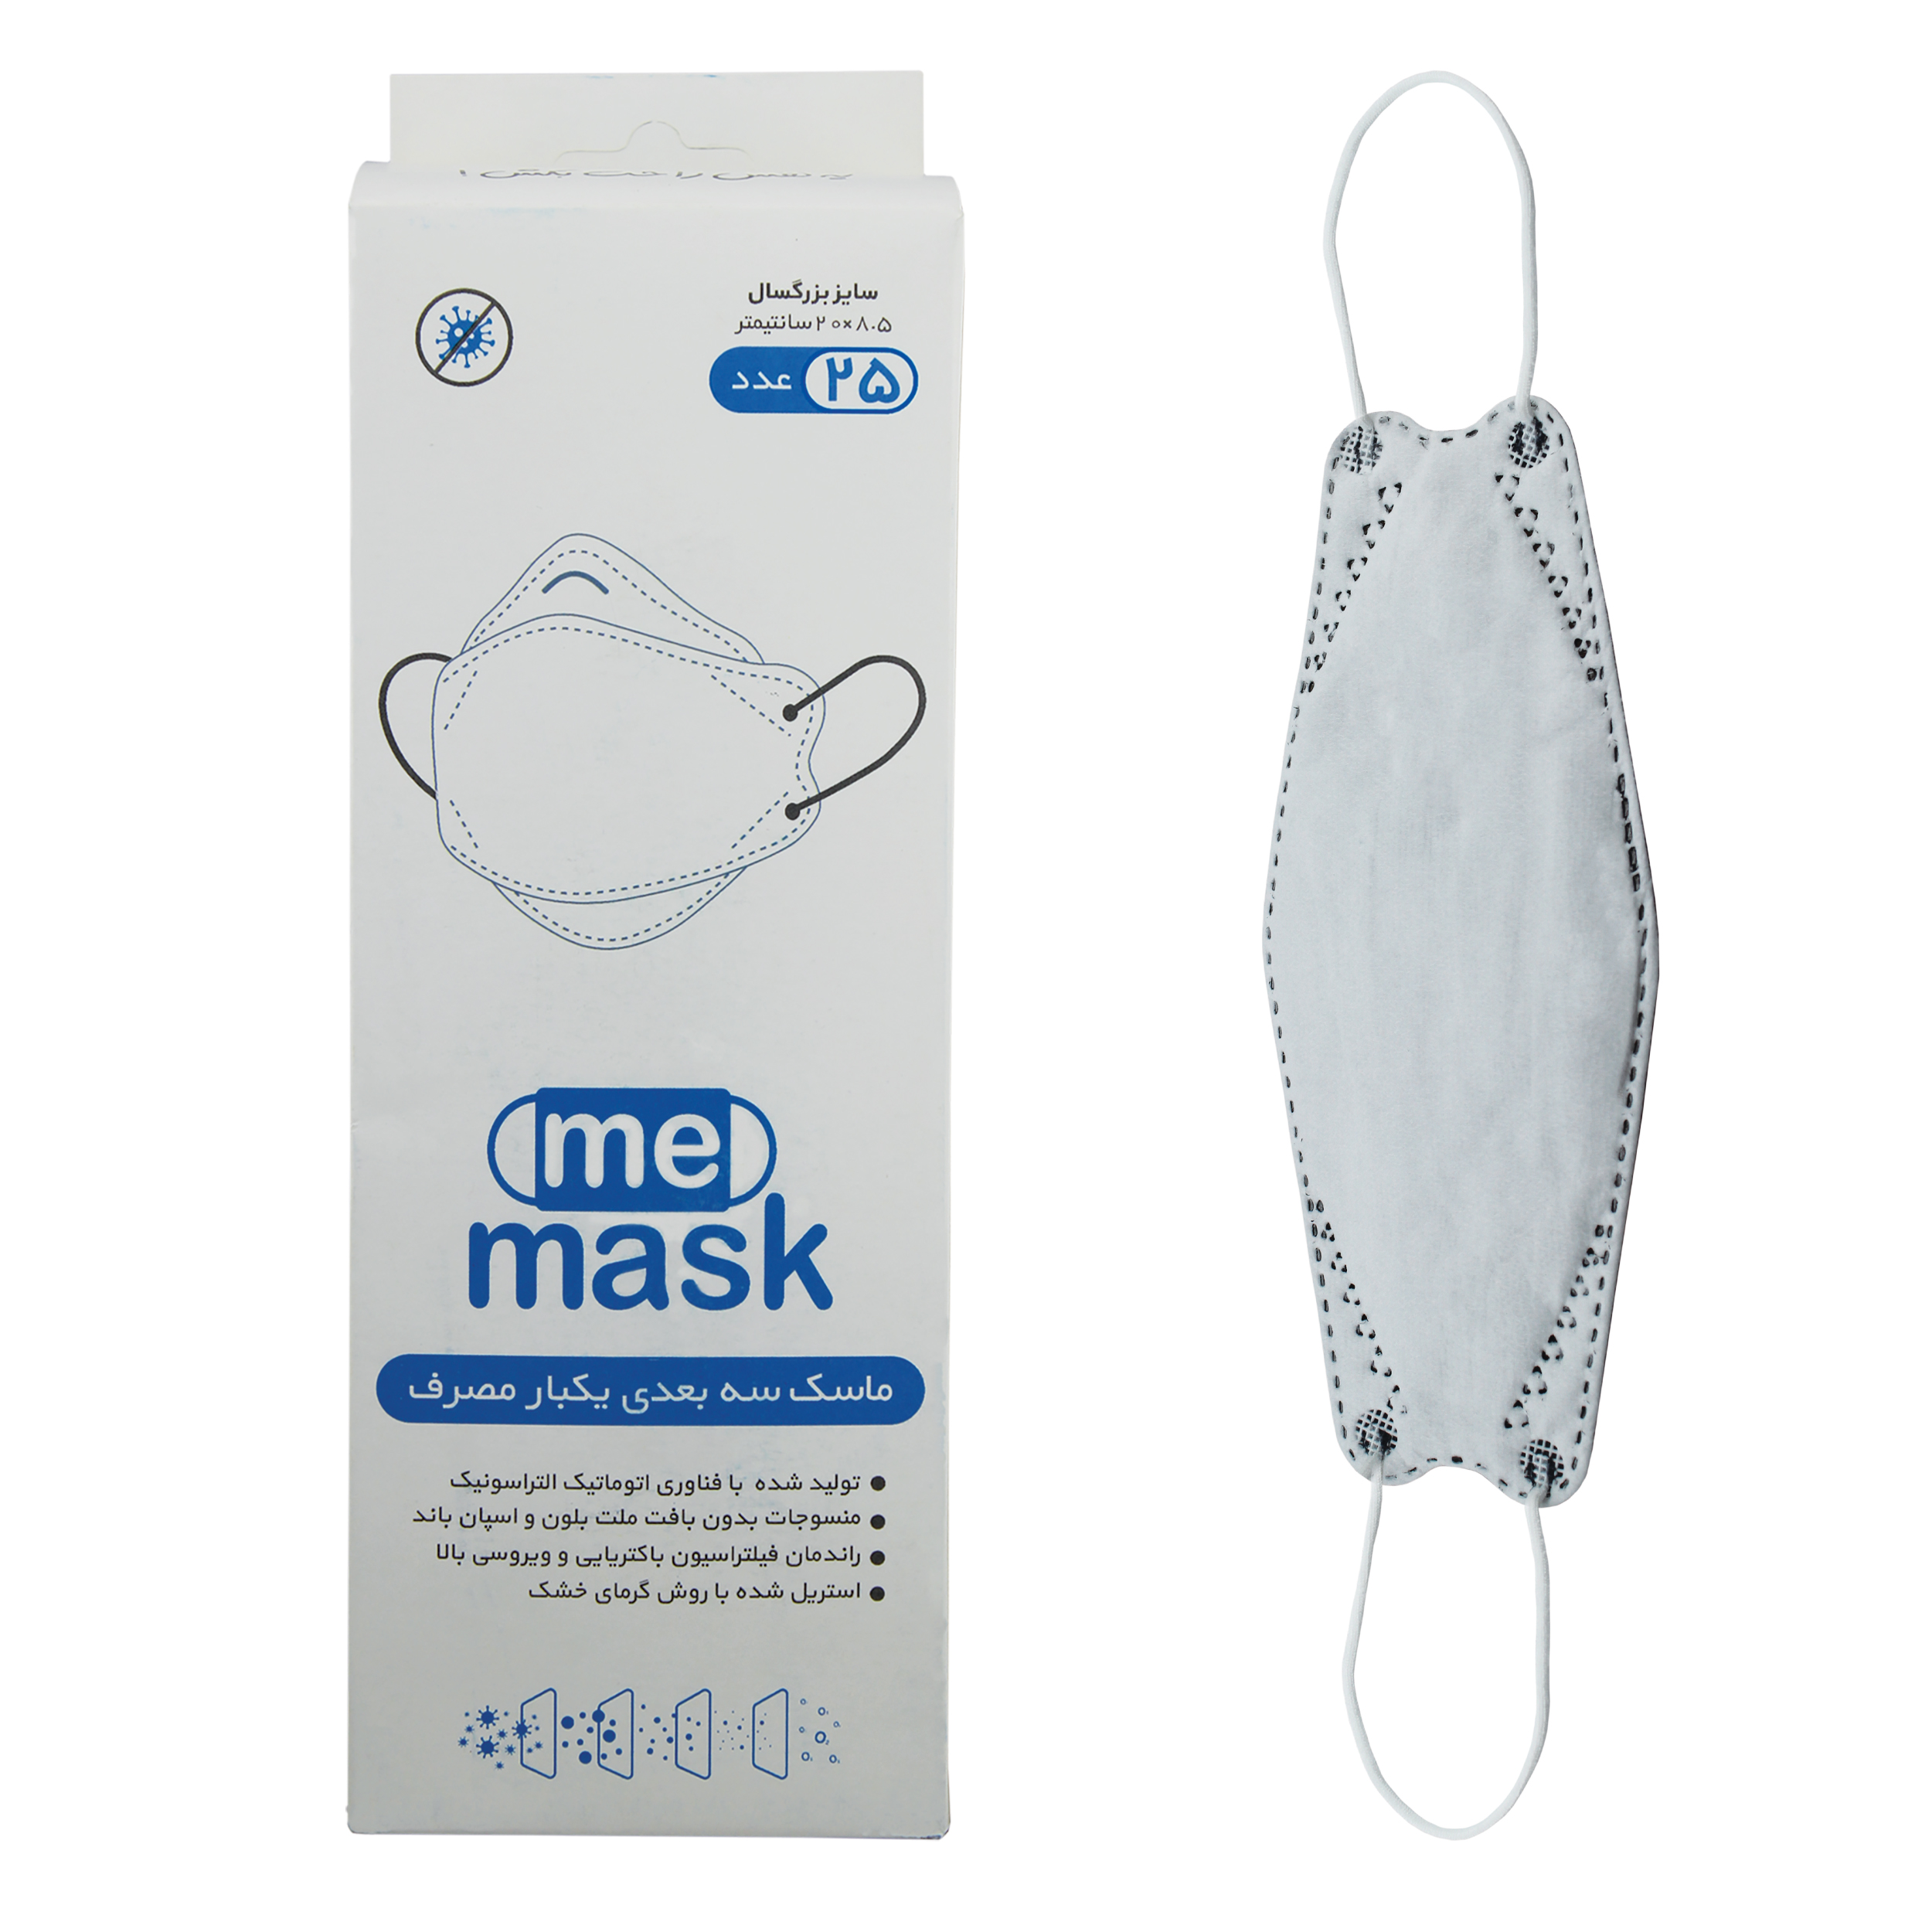 ماسک تنفسی می‌ماسک مدل سه بعدی Whb-25 بسته 25 عددی